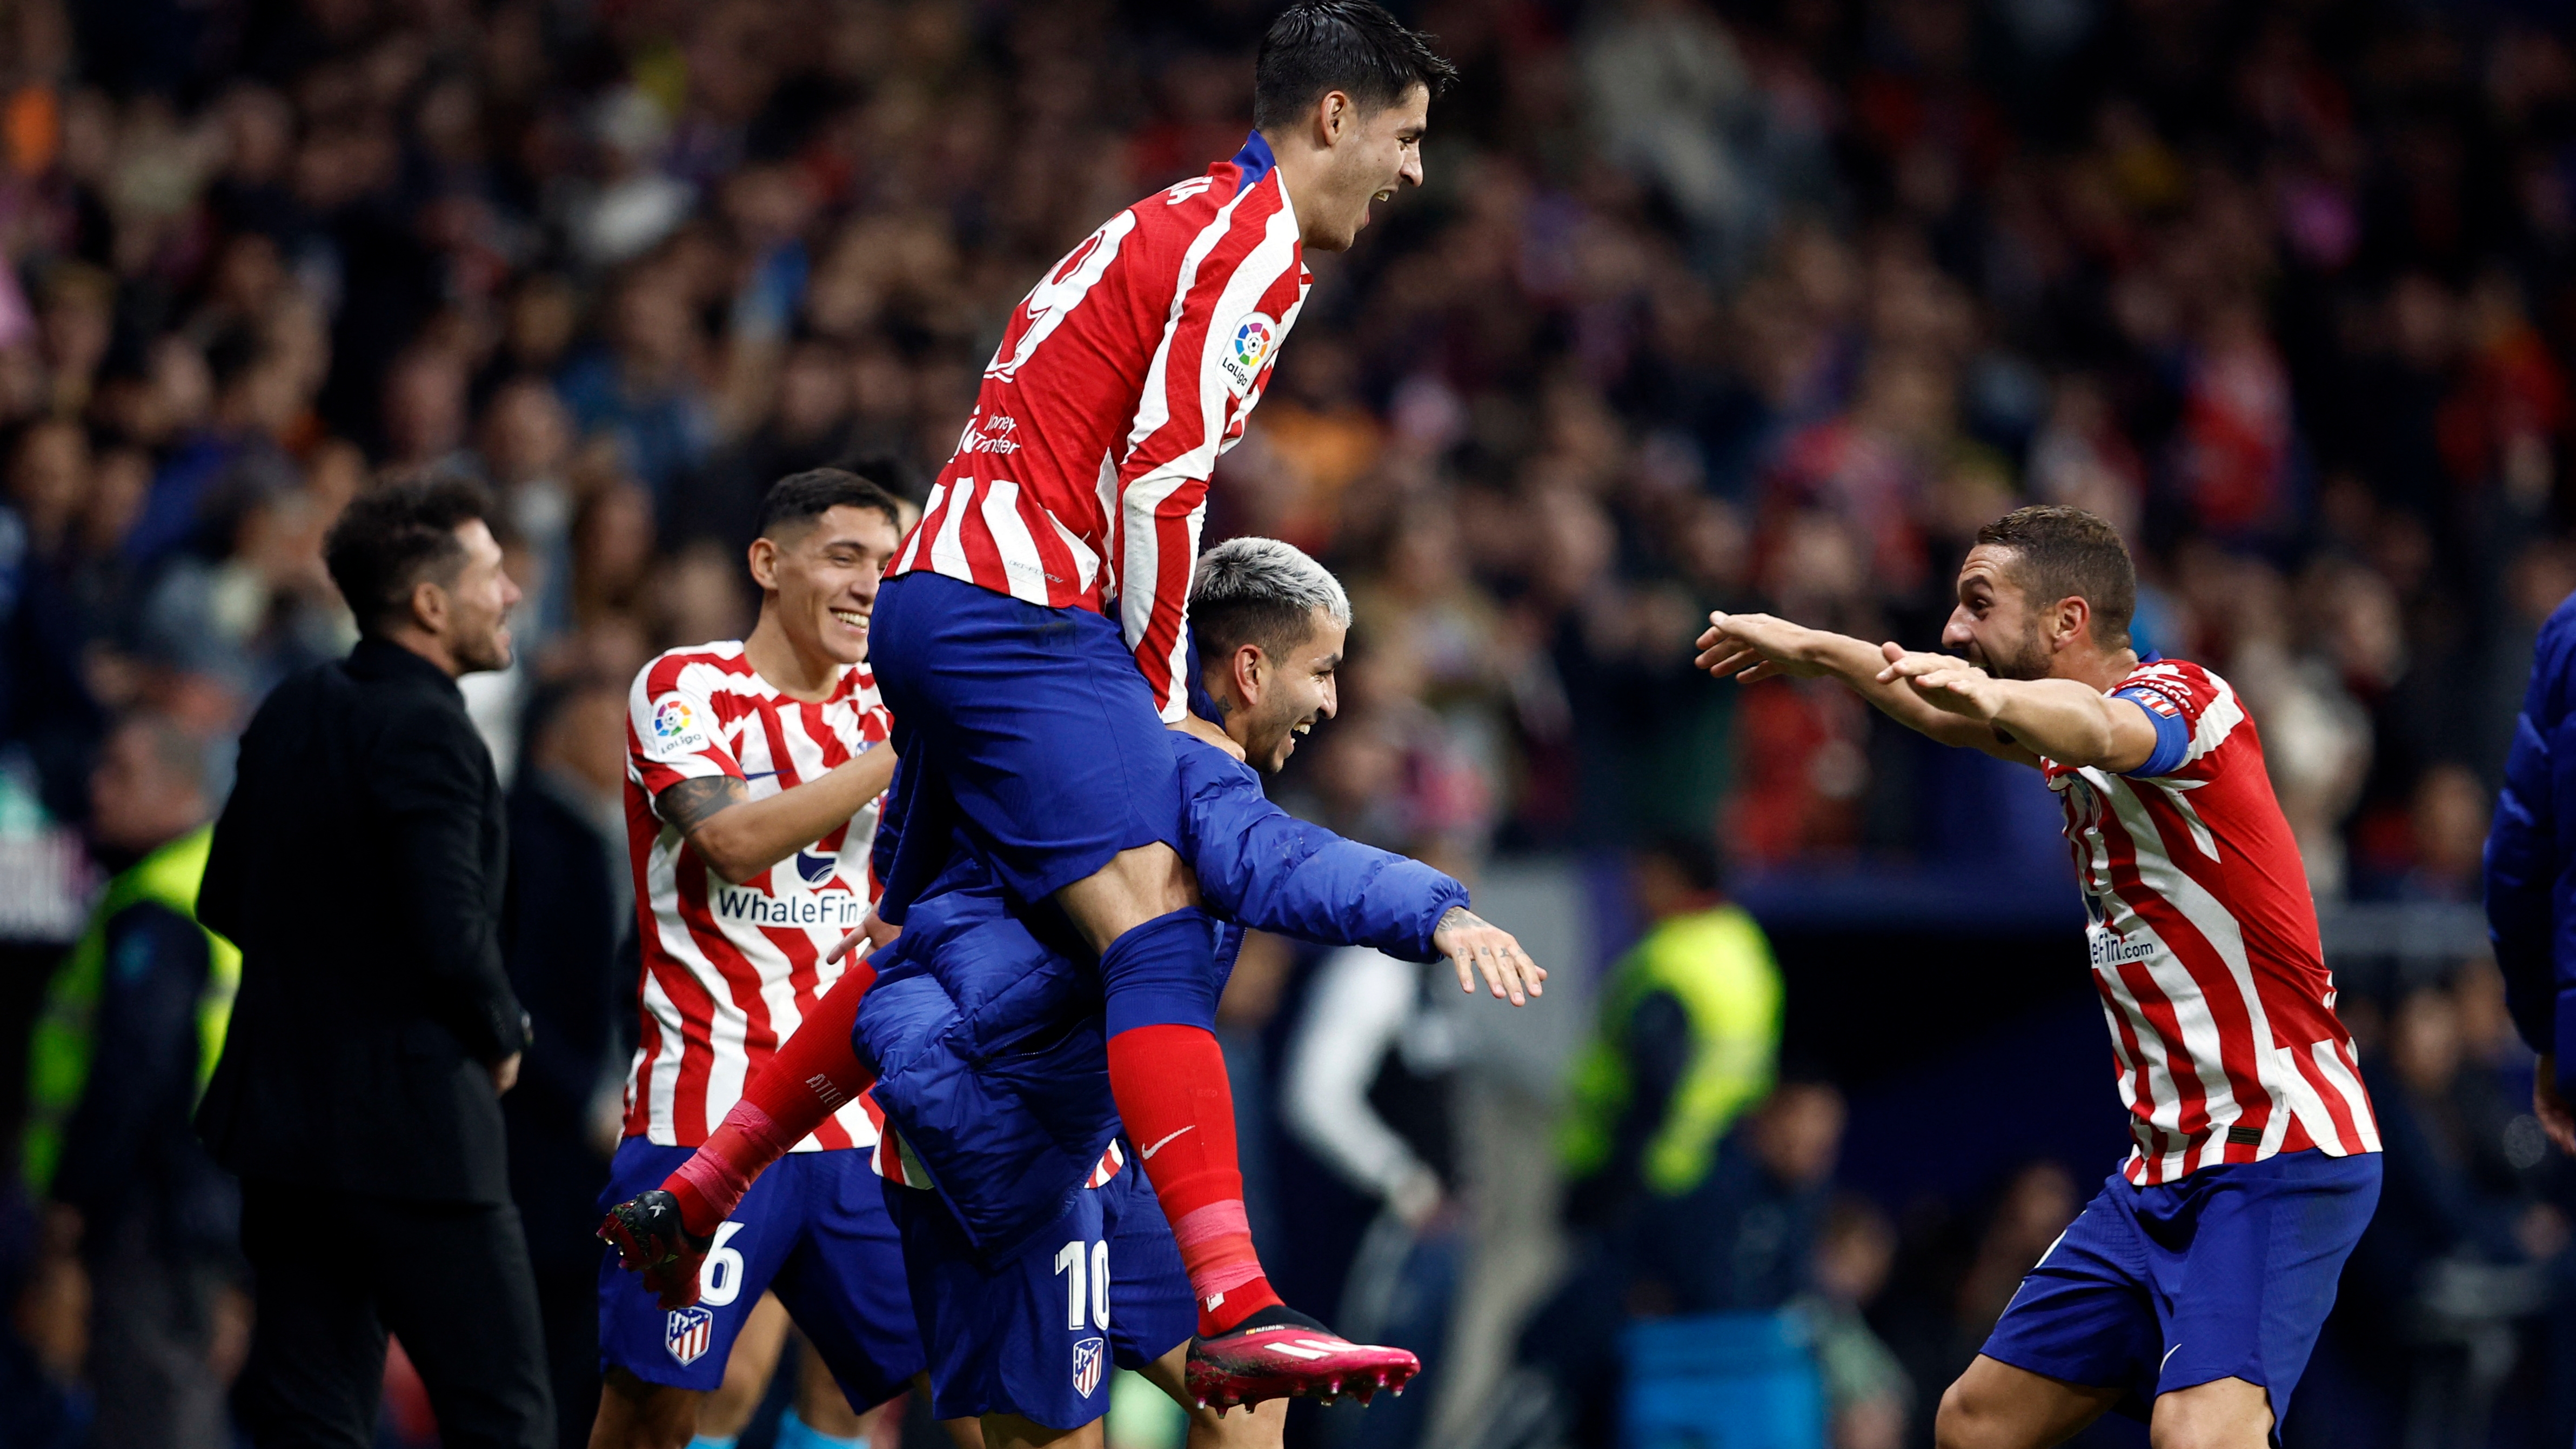 Increíble: Ángel Correa marcó un gol para Atlético de Madrid siendo suplente